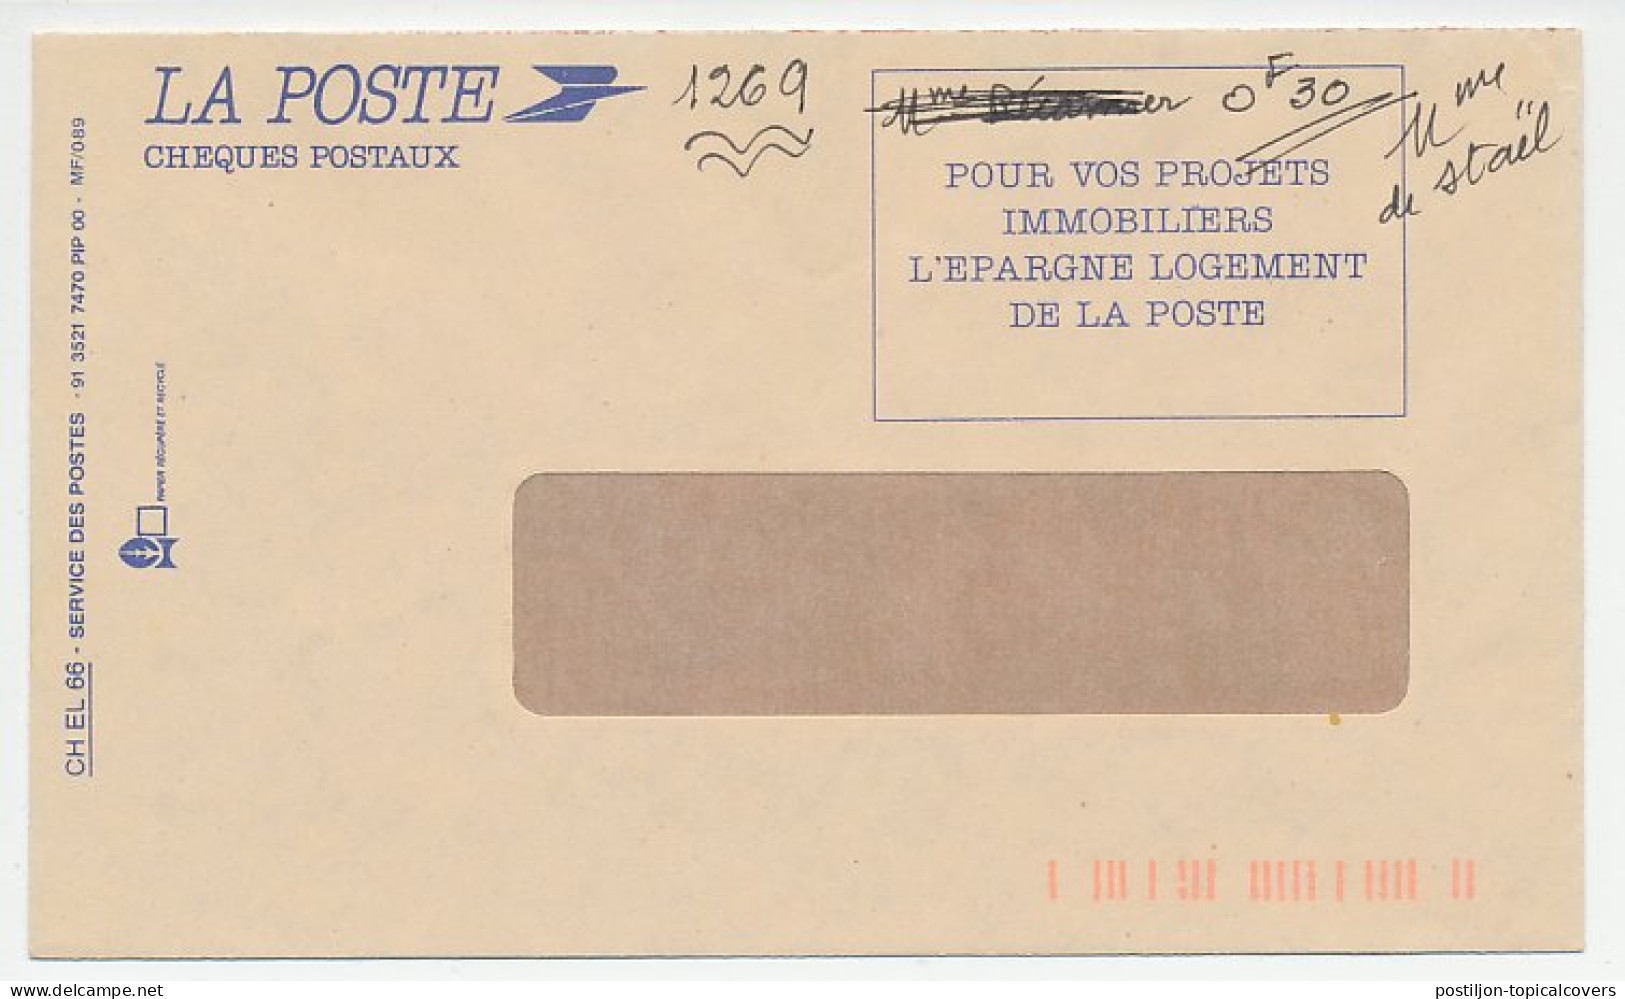 Postal Cheque Cover France 1991 Phone Card - Telecom